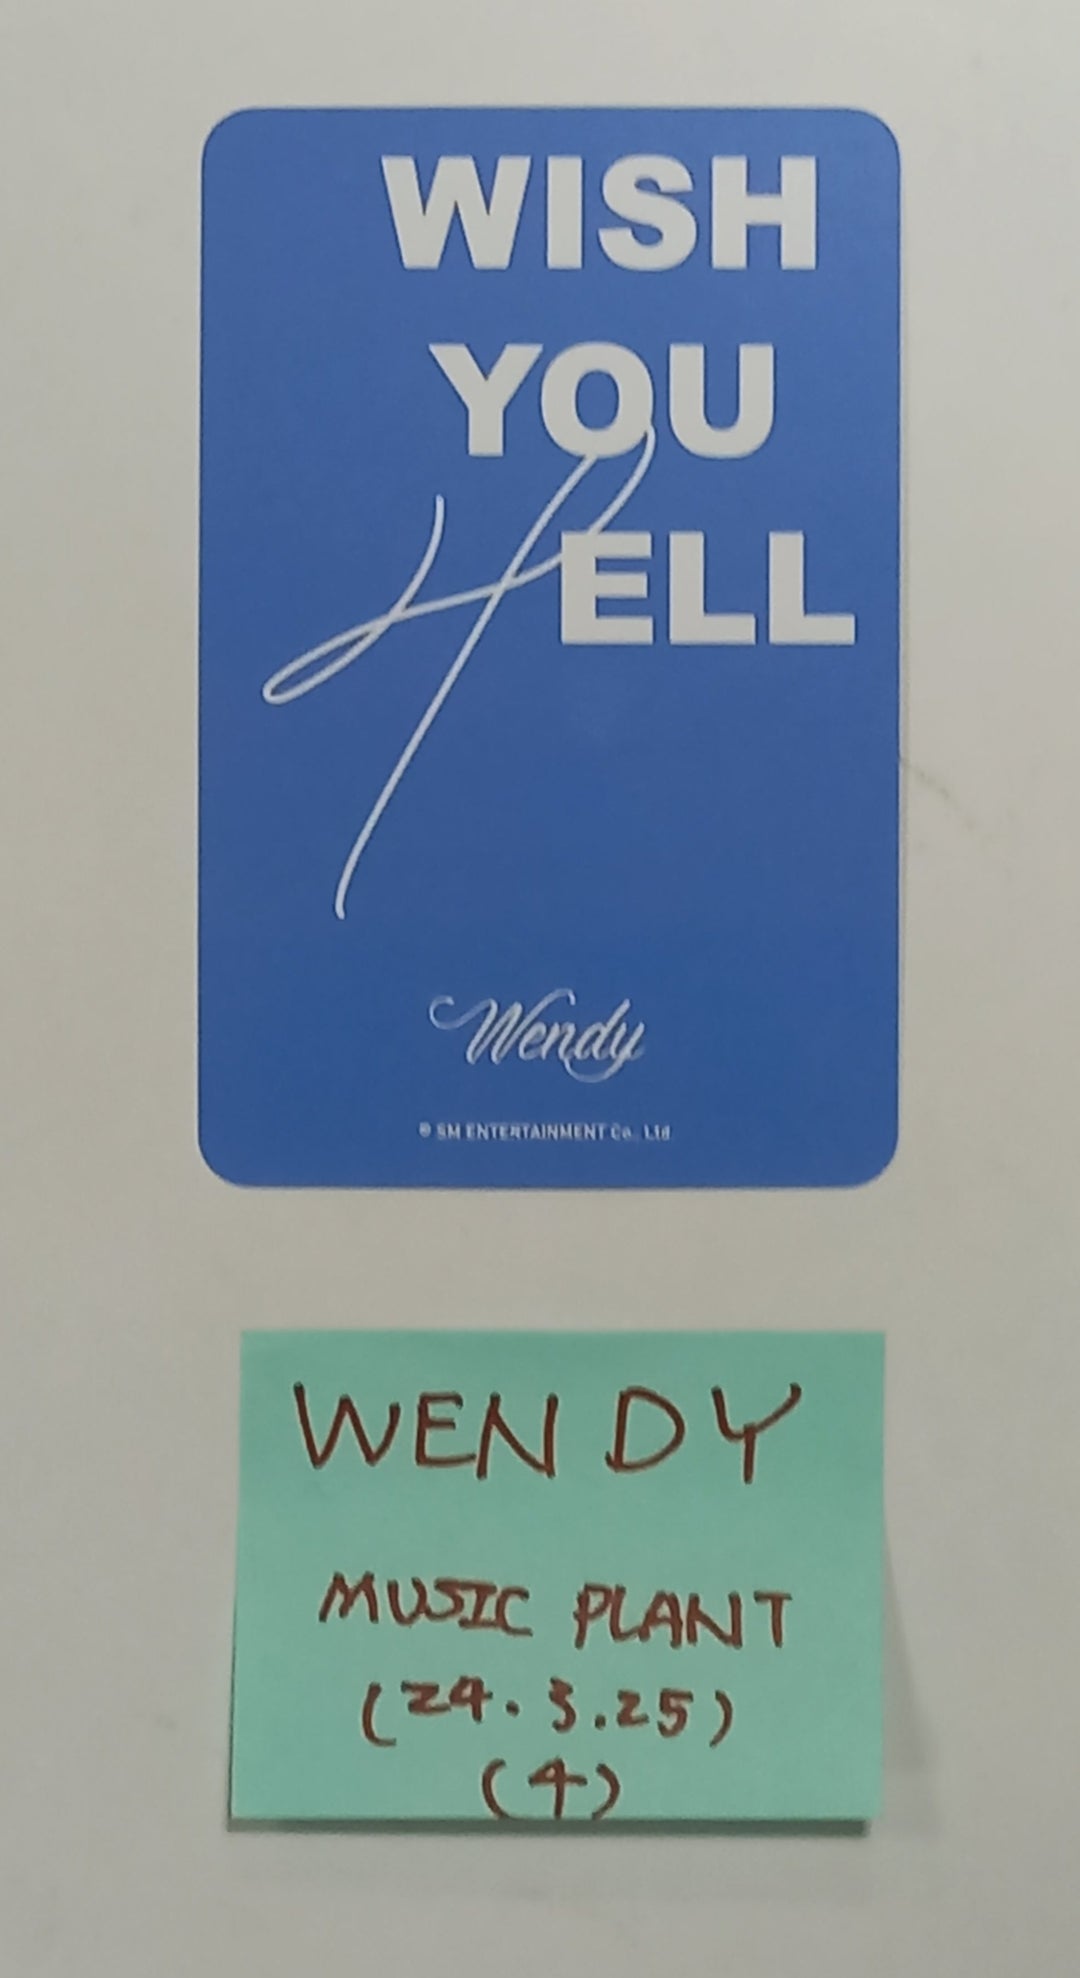 ウェンディ (Red Velvet) 「Wish You Hell」 - Music Plant ファンサイン イベント フォトカード [24.3.25]